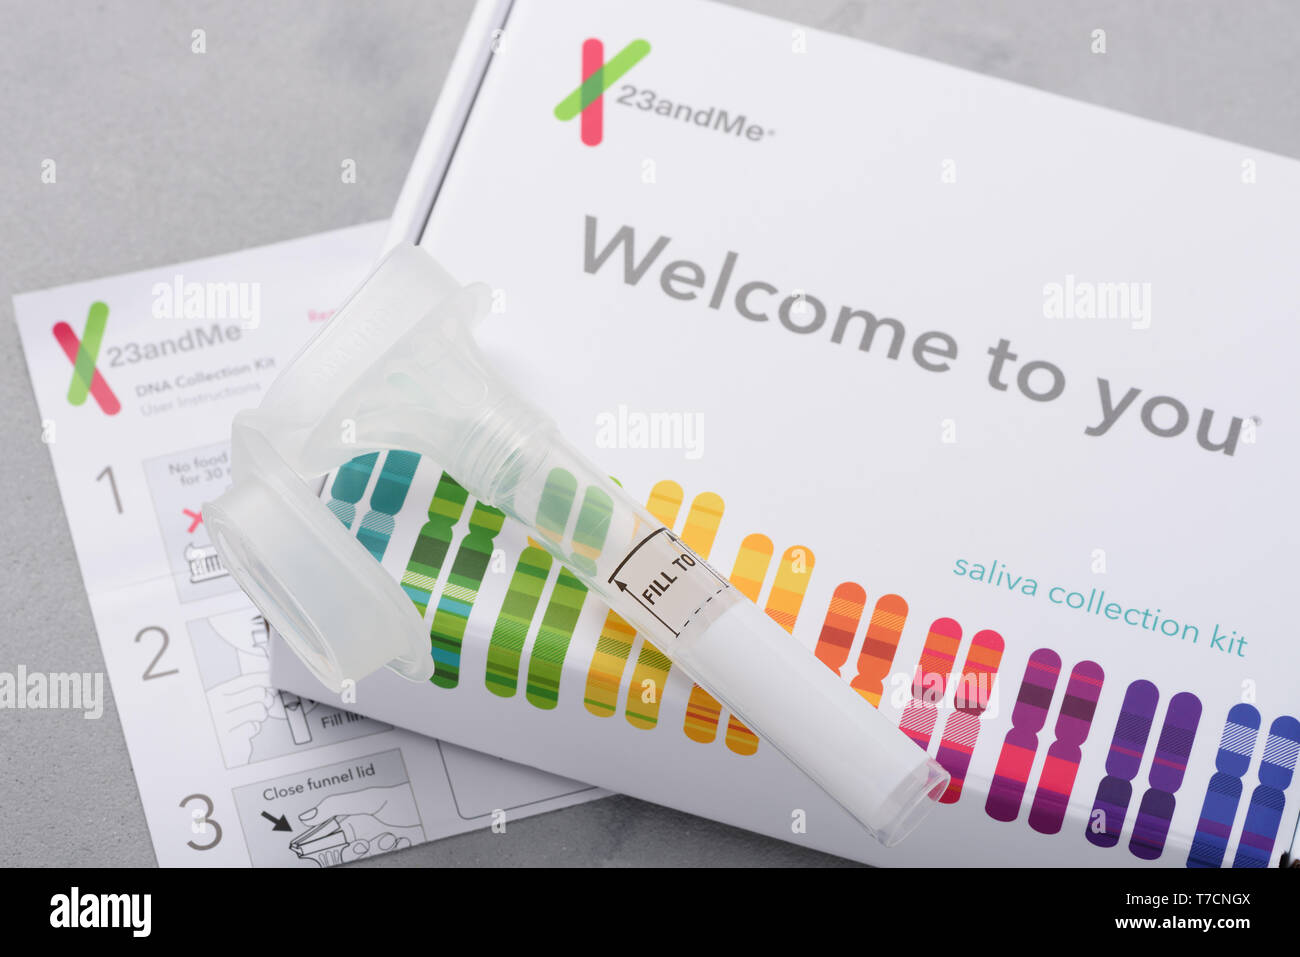 Kiev, Ukraine - 17 octobre 2018 : 23andMe test génétique personnelle kit de prélèvement de salive, avec un tube, fort et instructions. Rédaction d'illustration. Banque D'Images